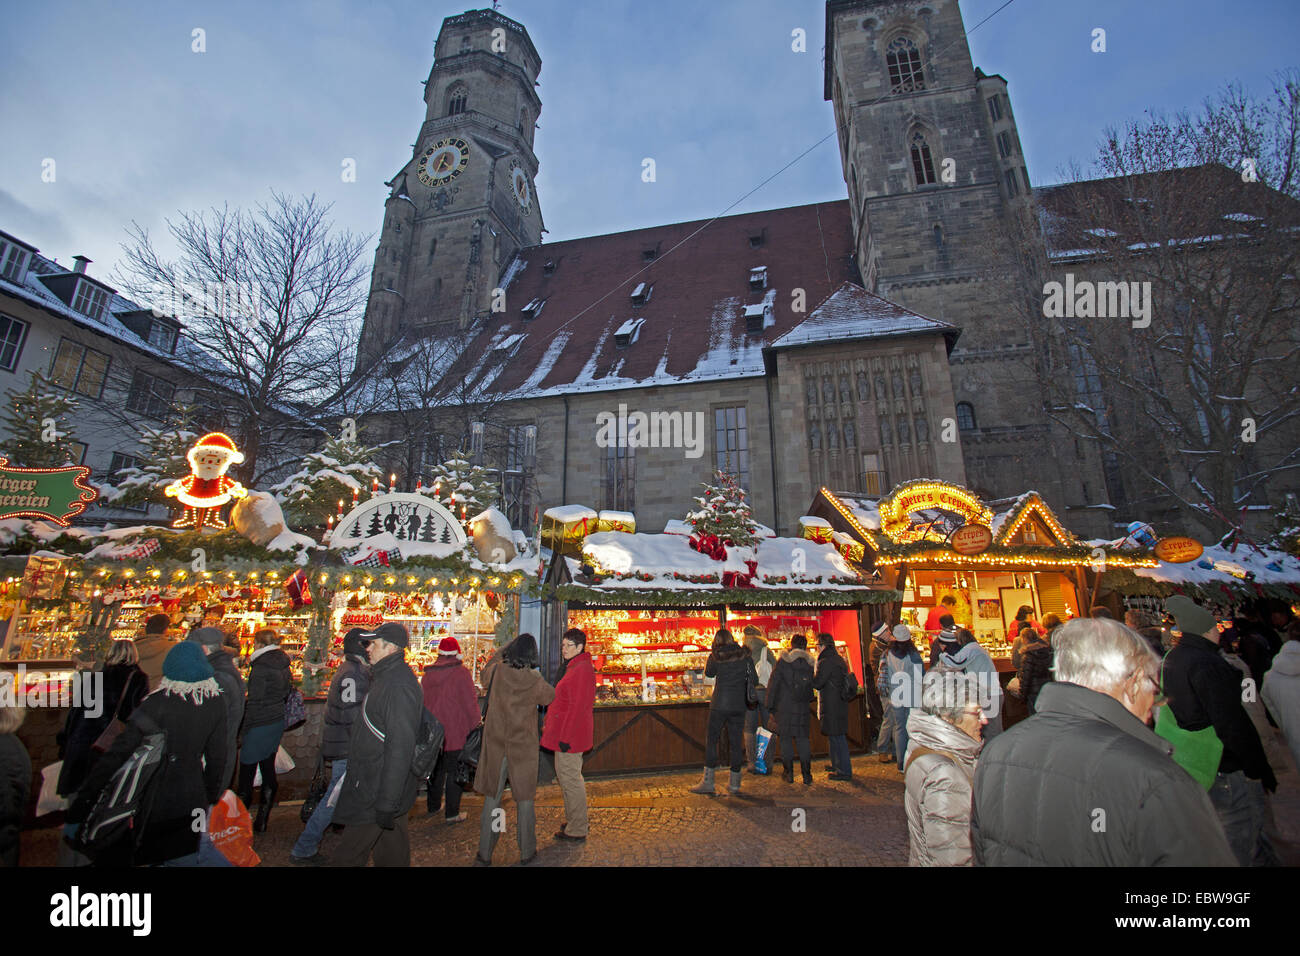 Christmas fair in the evening, Germany, Baden-Wuerttemberg, Stuttgart Stock Photo